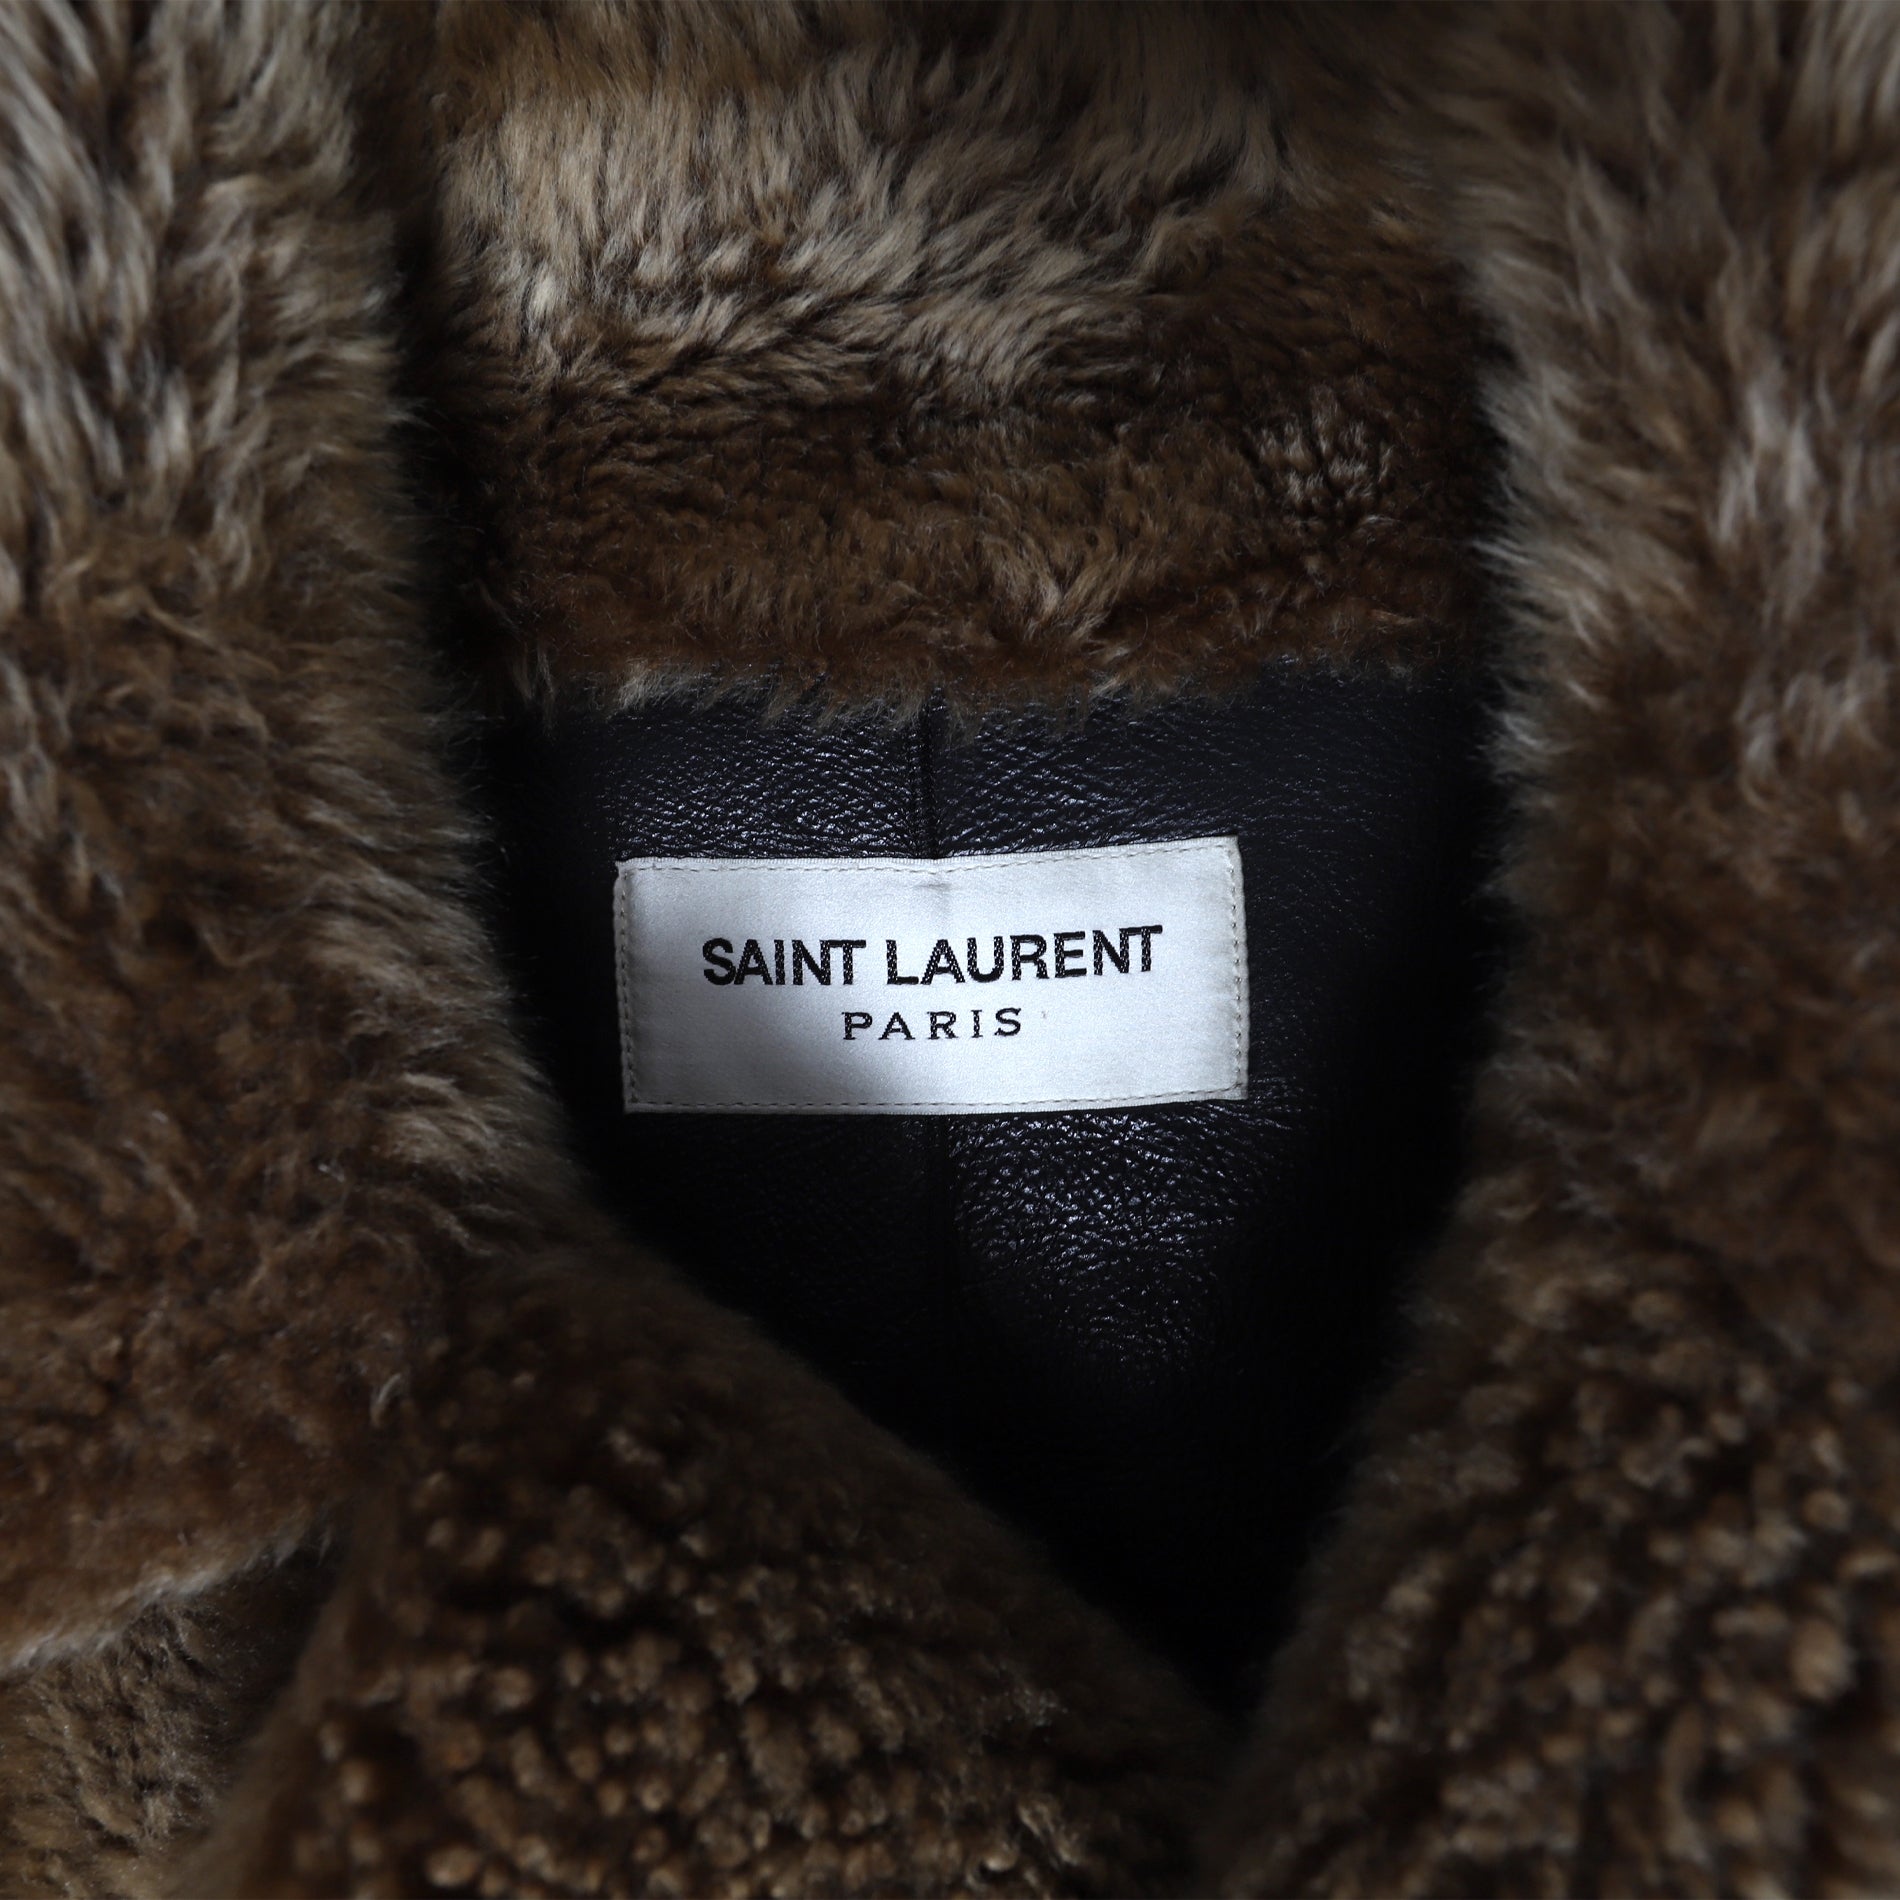 Saint Laurent Paris FW16 Shearling Fur Double Breasted Sample Coat